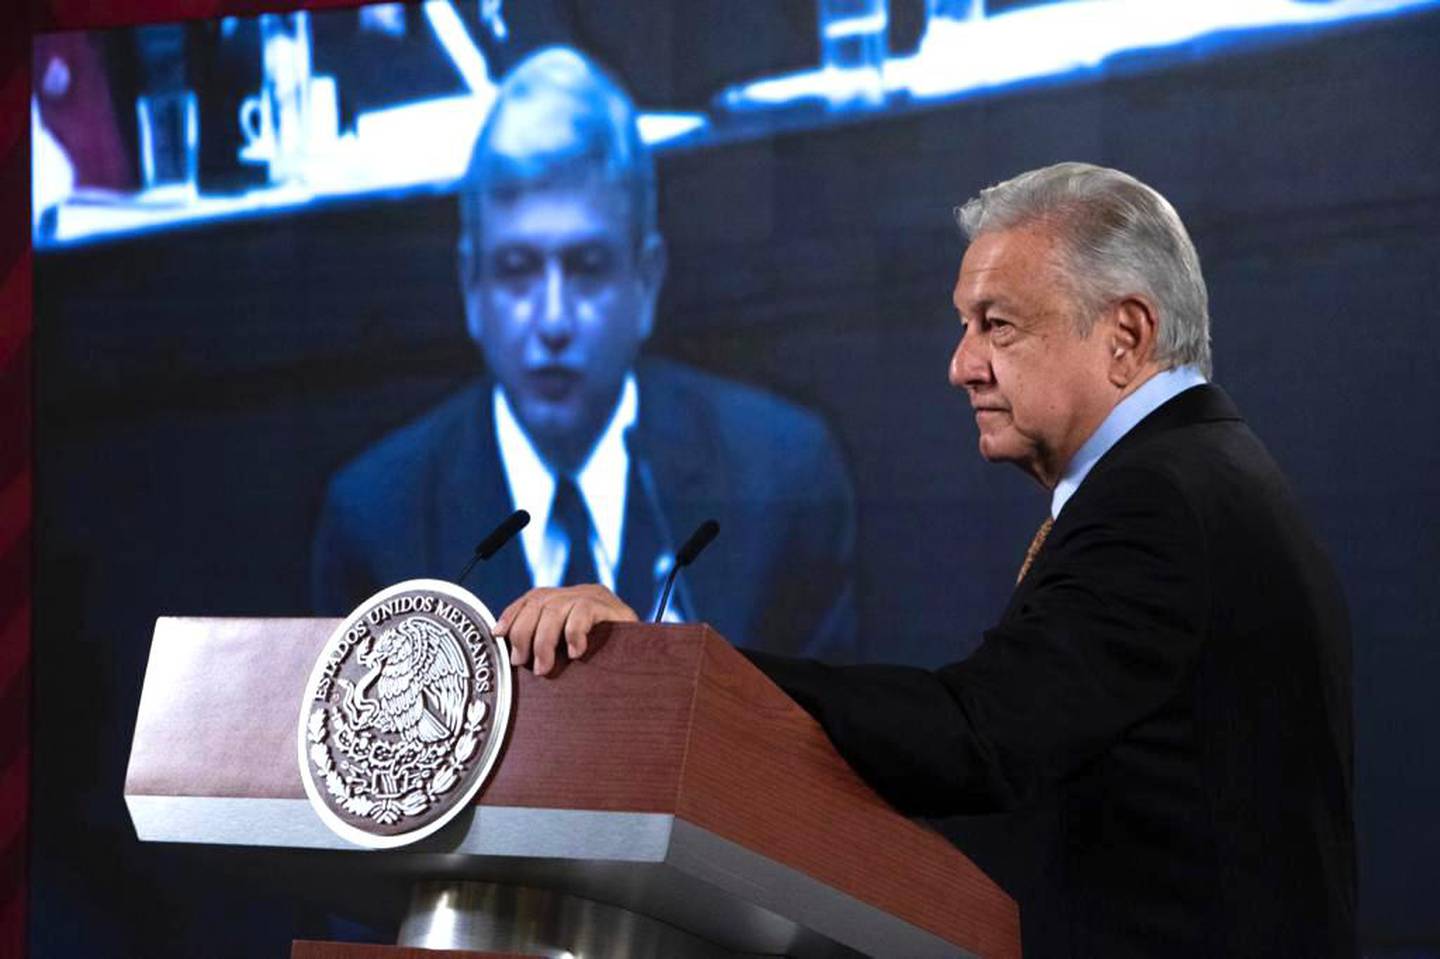 El proceso electoral contó con un presupuesto de MXN$1,567 millones, menos de la mitad de lo proyectado por la autoridad electoral